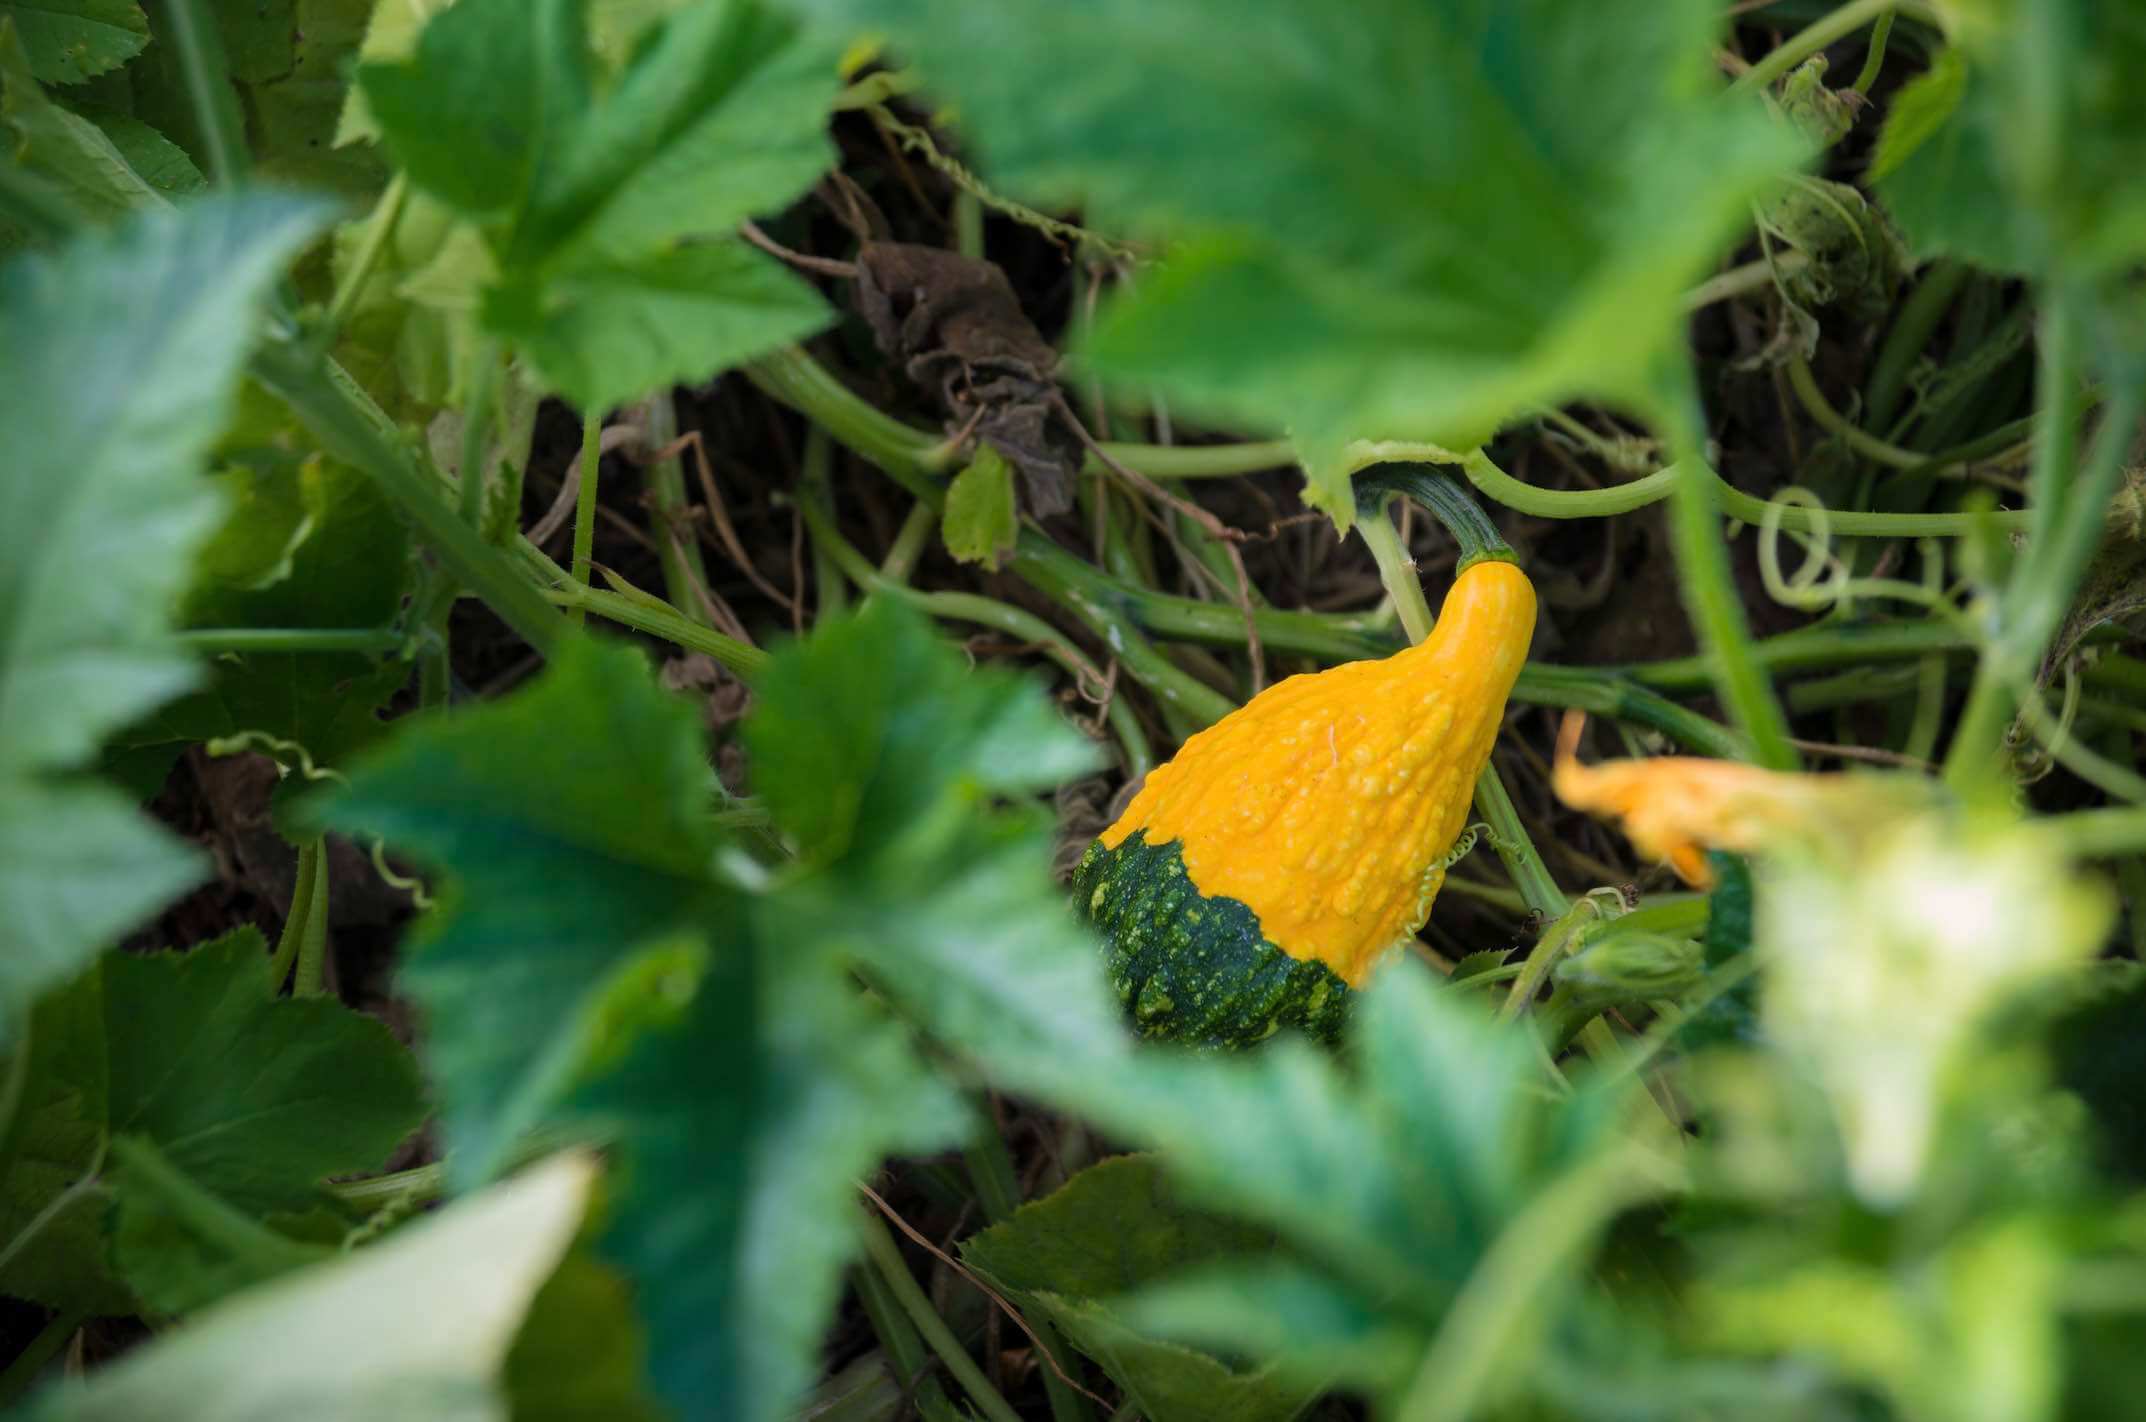 Gourd peeking through the leaves of a squash